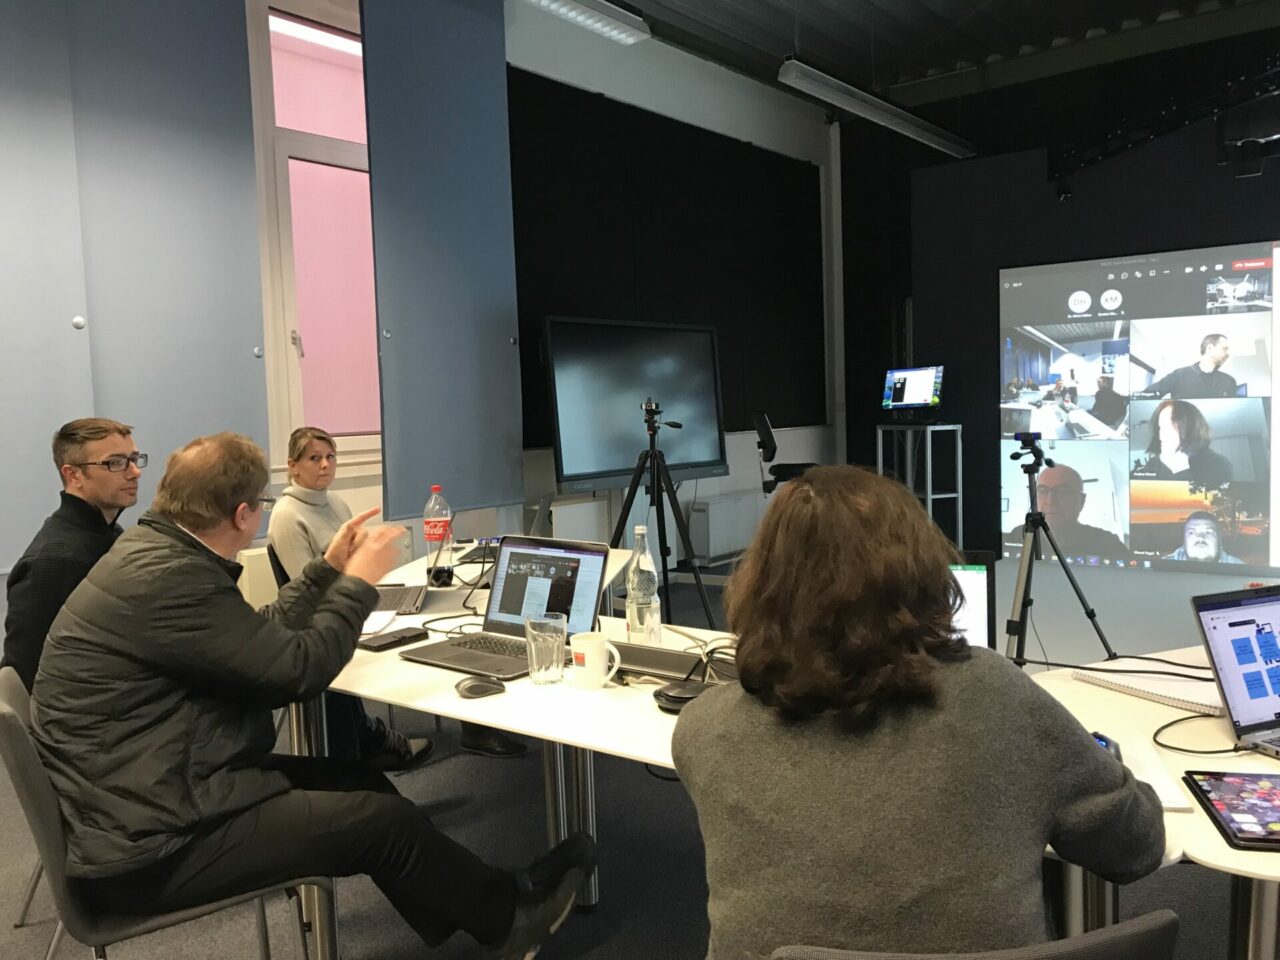 Ein Teamtraining: Auf dem Bildschirm werden die Elemente der virtuellen Realität (VR) gezeigt. Die Menschen diskutieren miteinander.